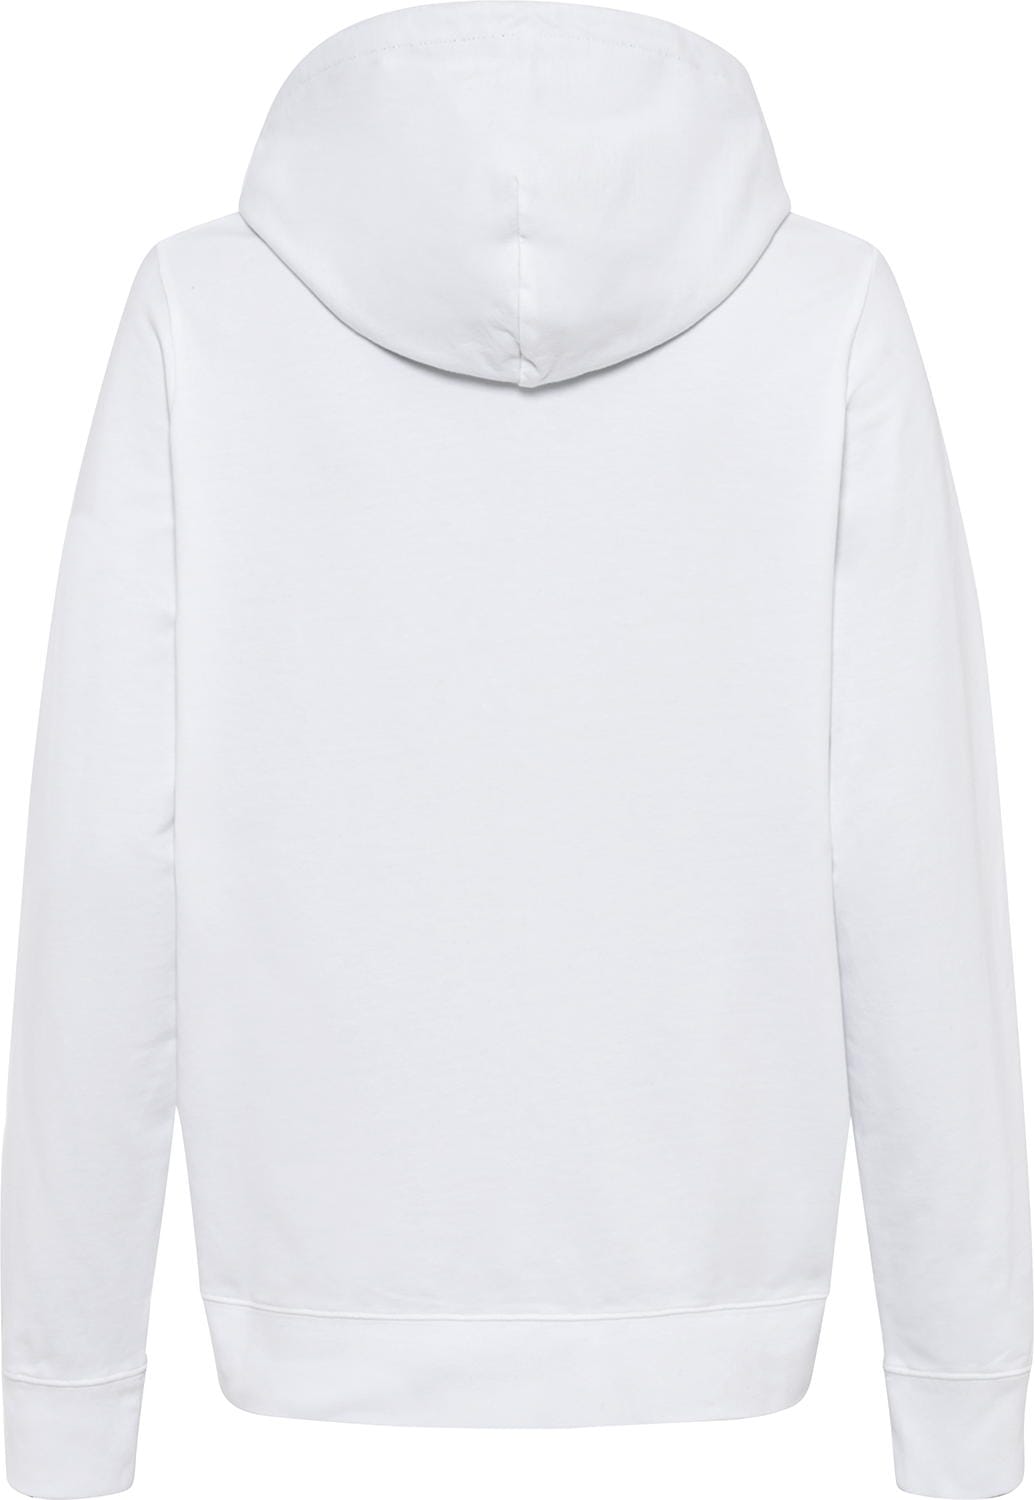 Golfino Soft Hoodie Sweater, white